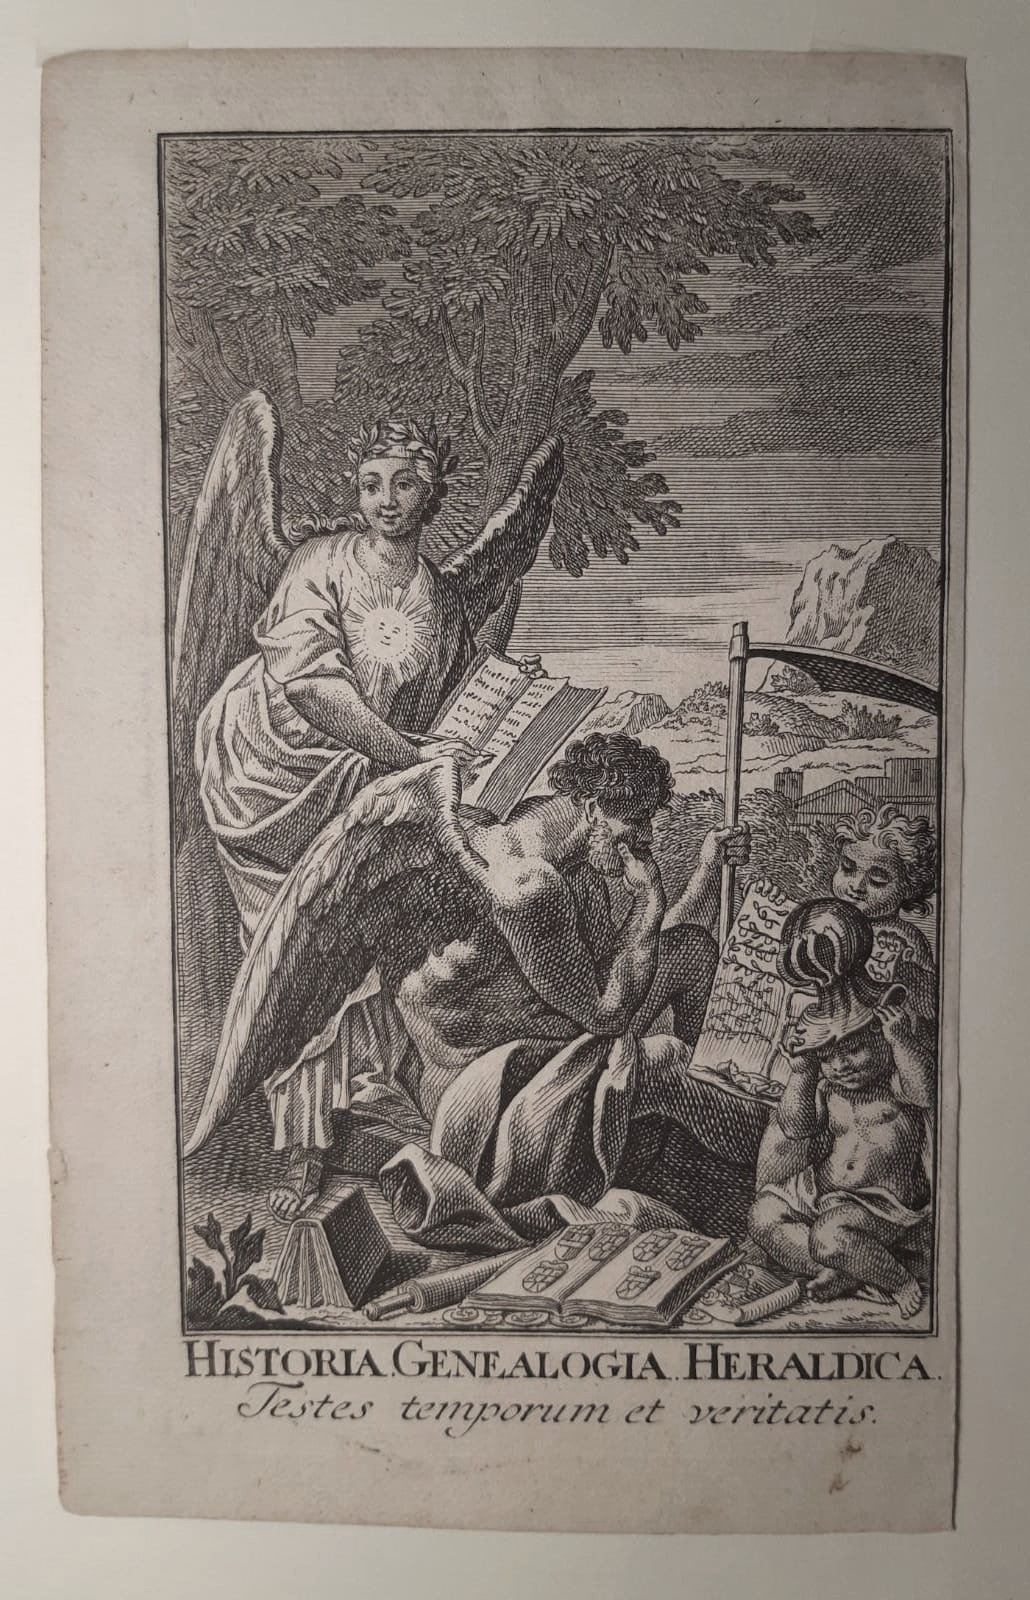 [Antique title page, 1737] Historia. Genealogia. Heraldica. Testes temporum et veritatis, published 1737 [?], 1 p.